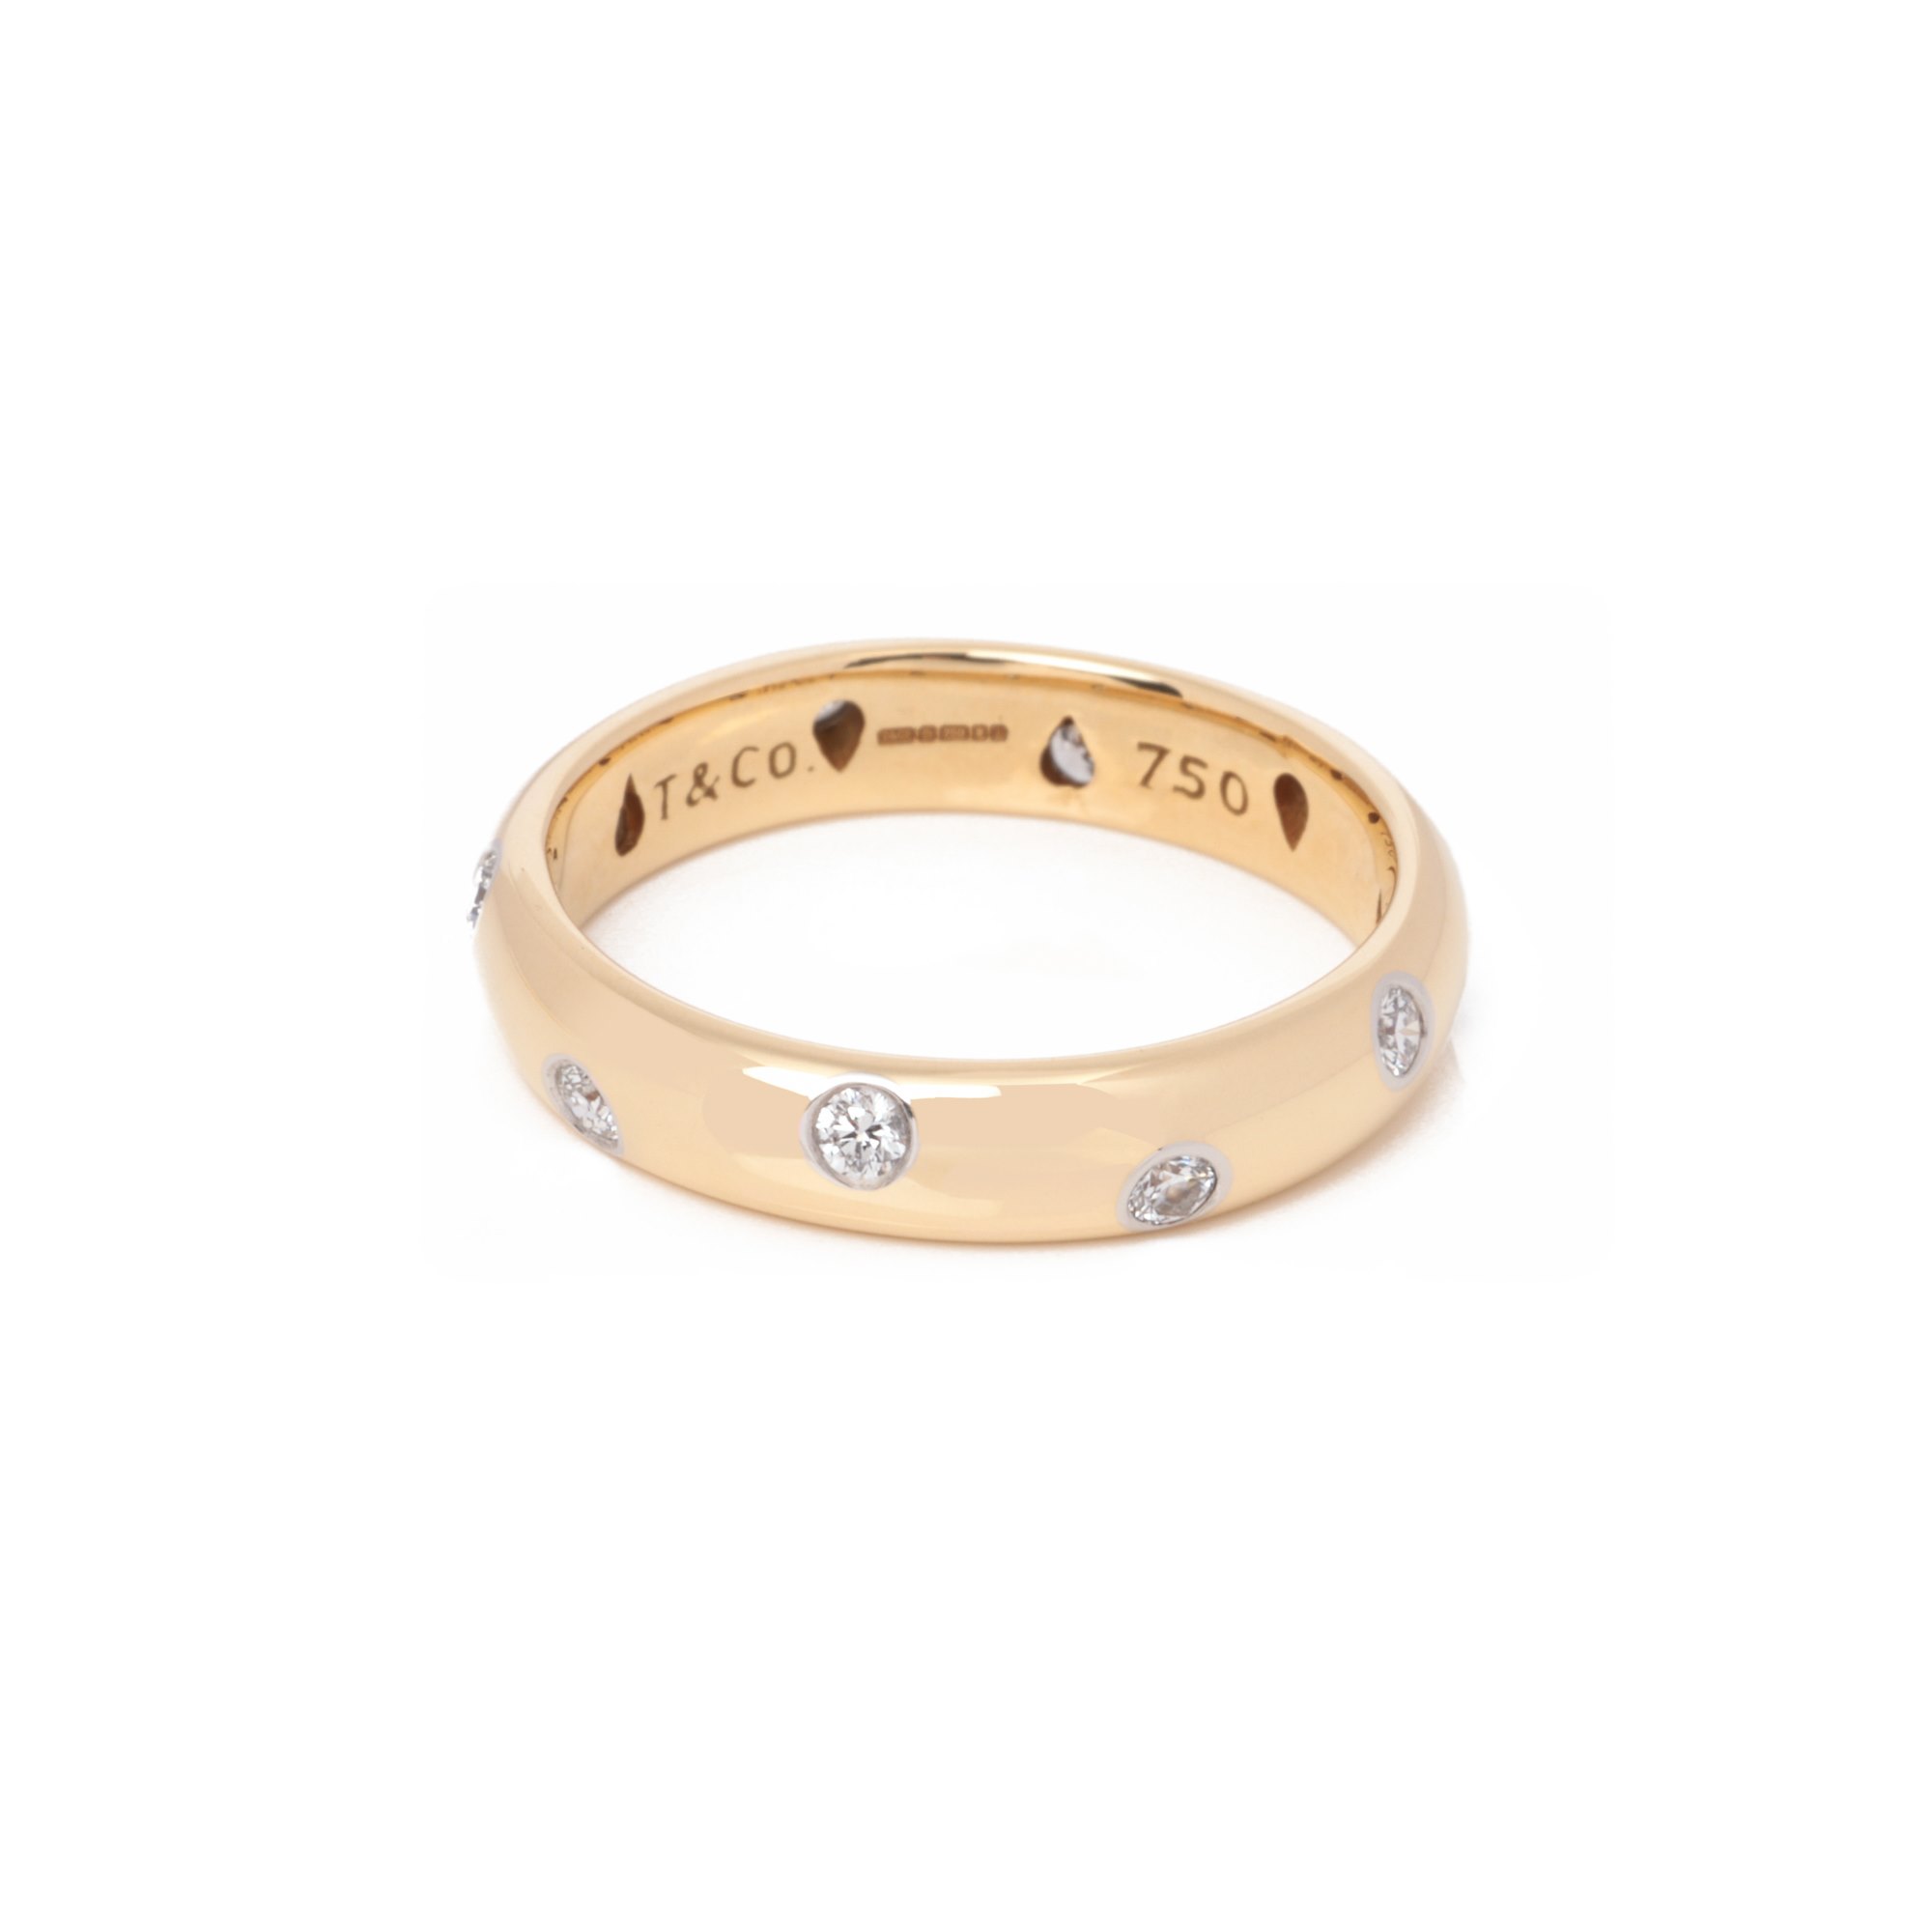 Tiffany & Co. Etoile Band Ring